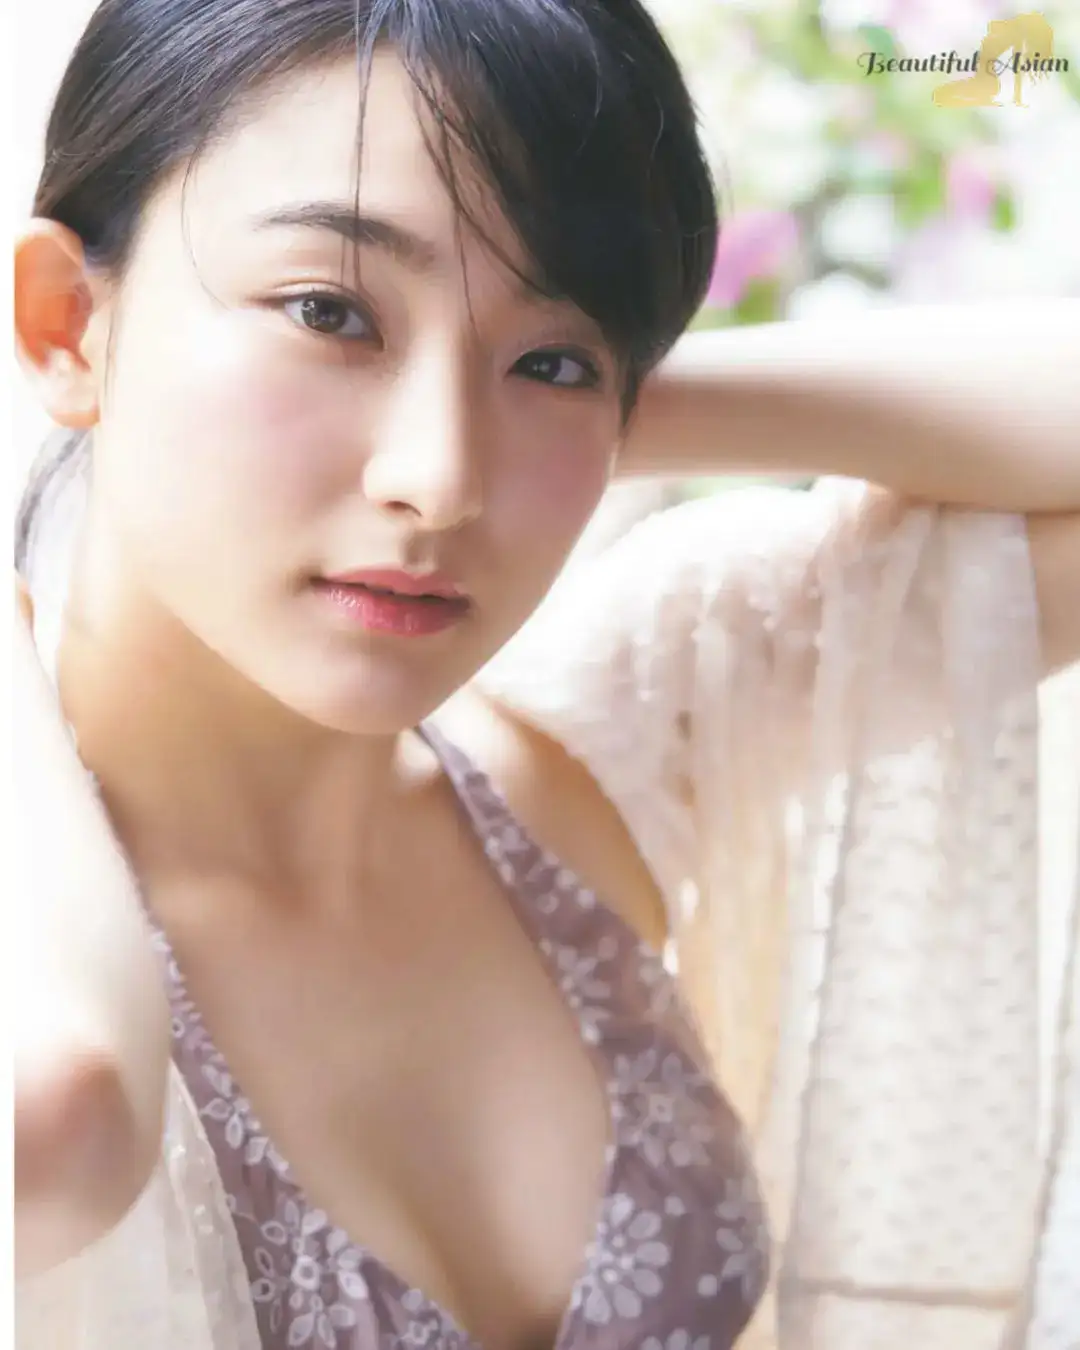 radiant Japanese girl pic